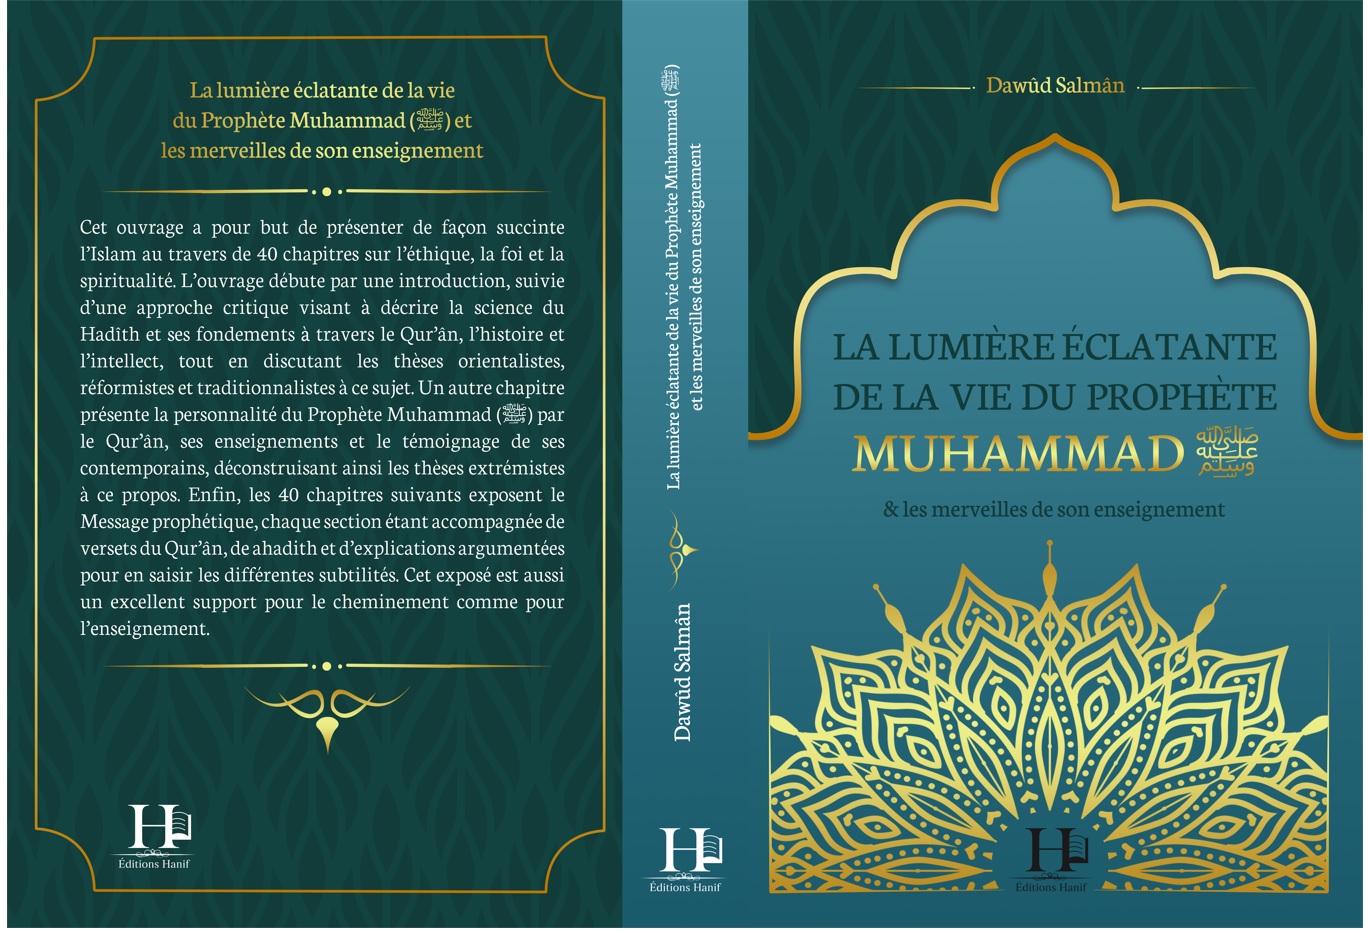 Ebook - La lumière éclatante de la vie du Prophète Muhammad (ﷺ) et les merveilles de son enseignement (Dawûd Salmân - 2021)